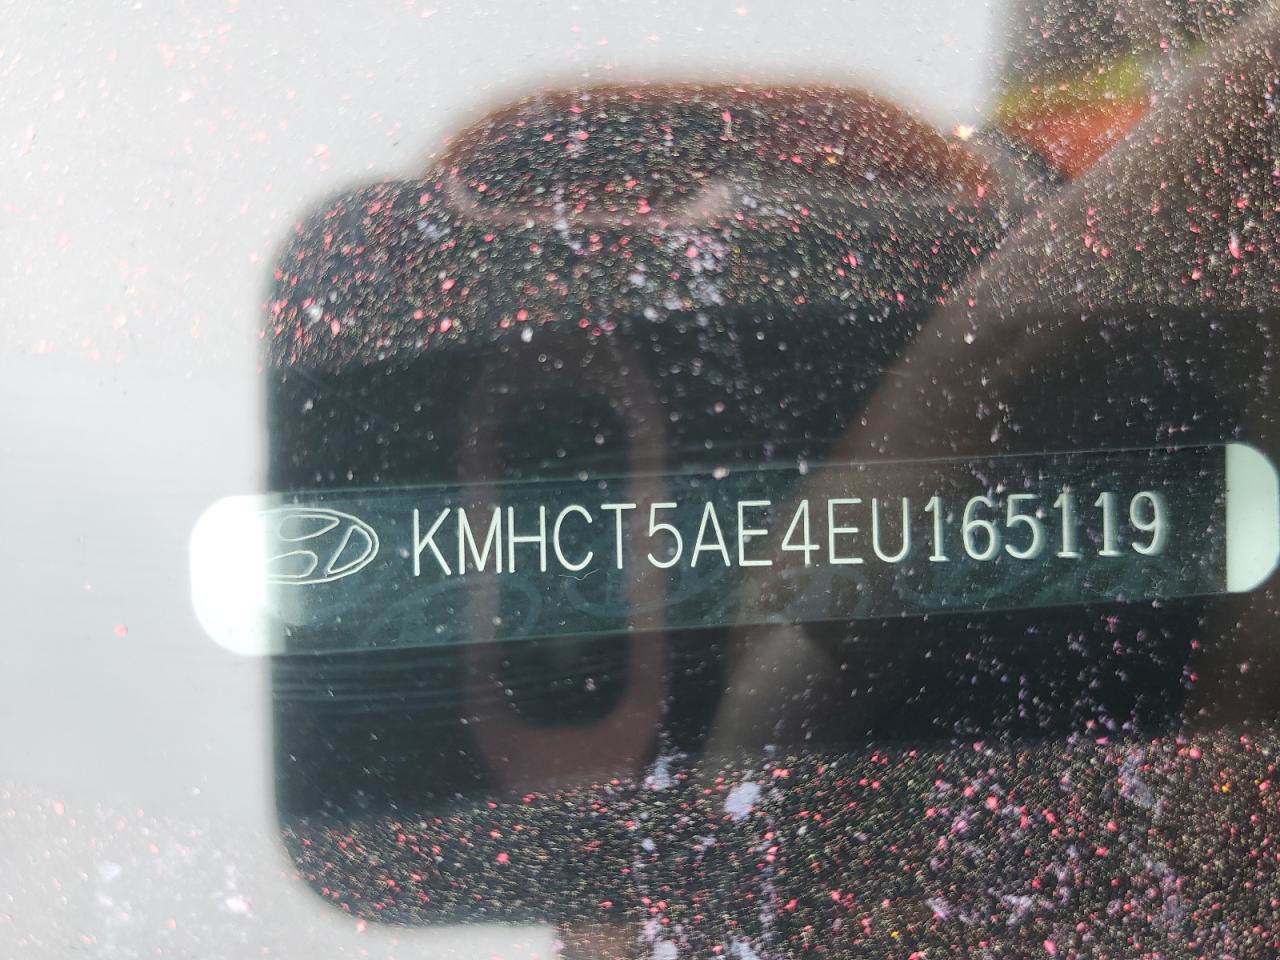 2014 Hyundai Accent Gls White vin: KMHCT5AE4EU165119